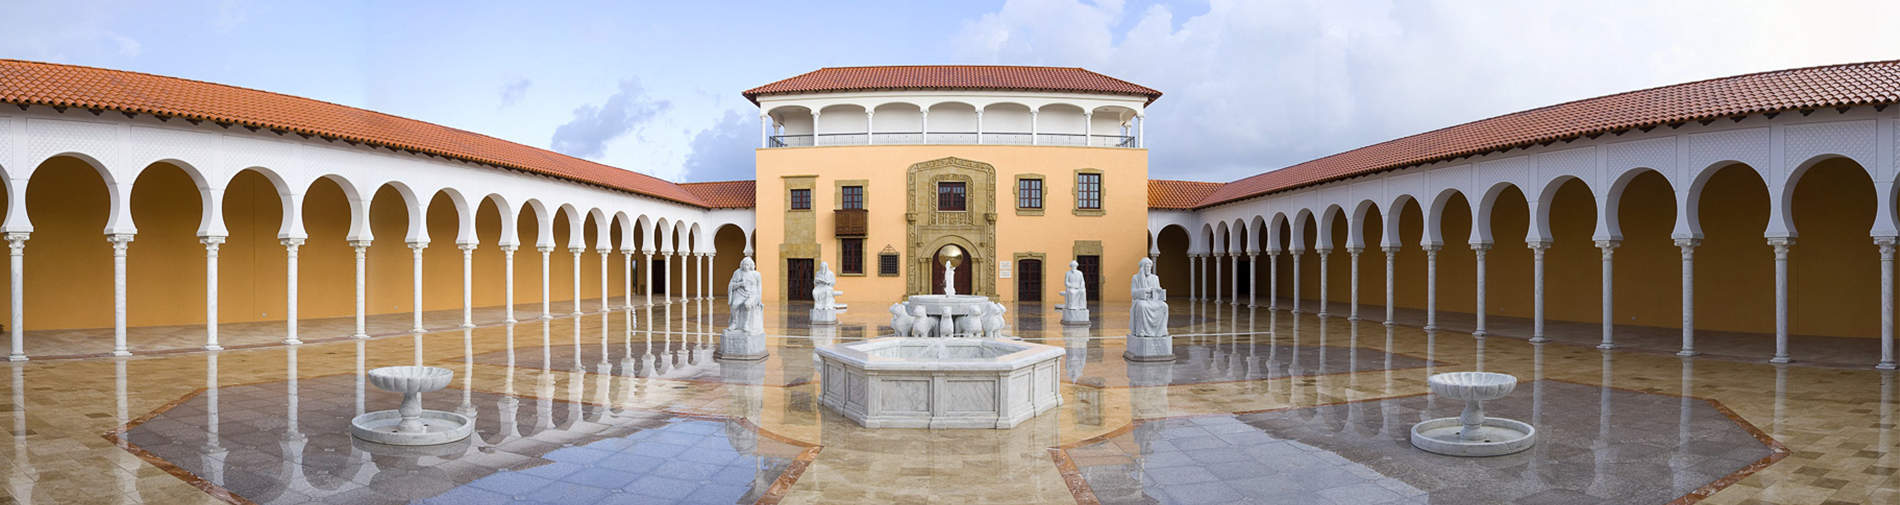 מוזיאוני ראלי קיסריה 